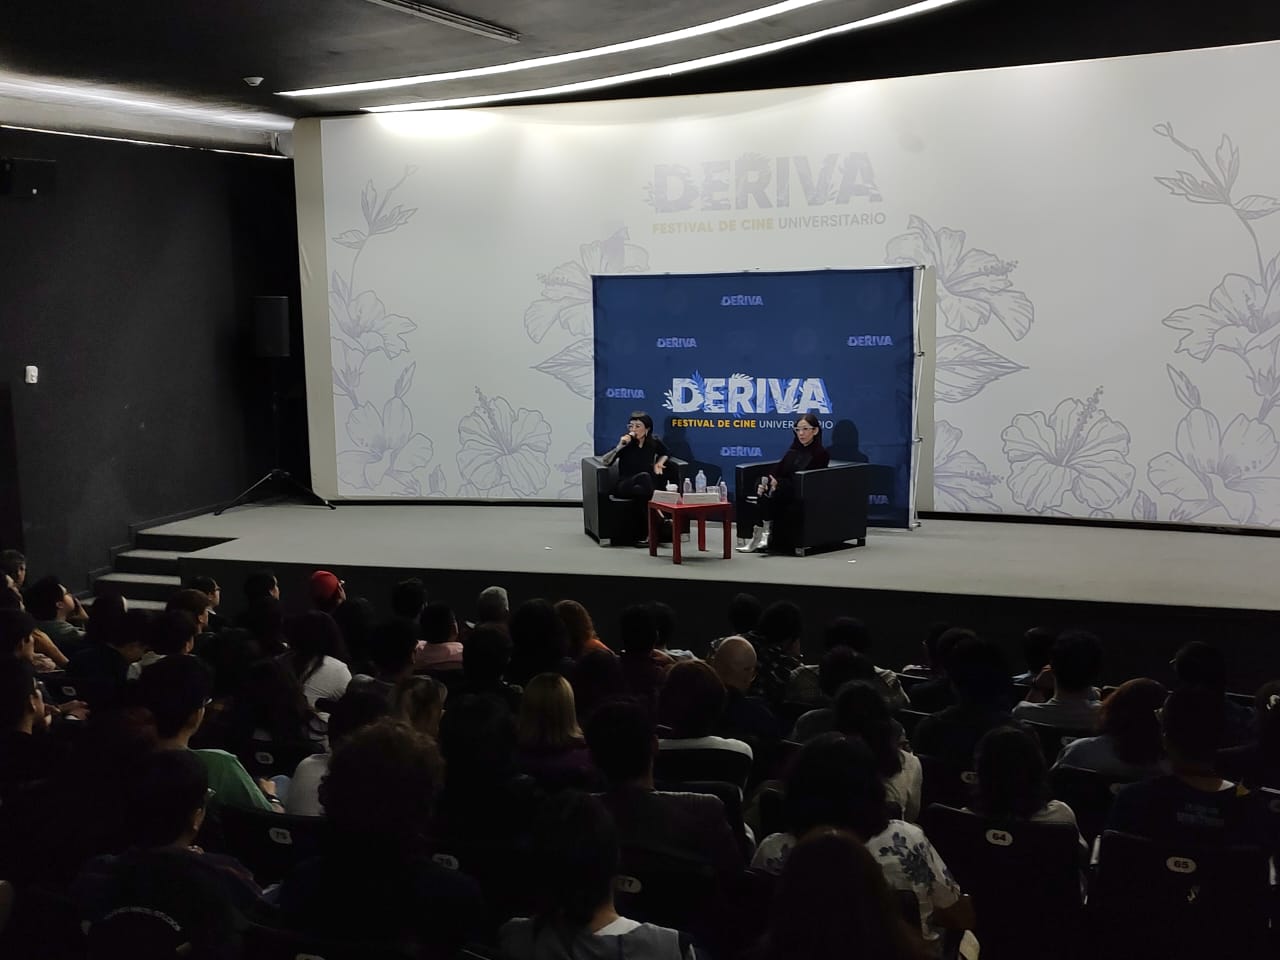 Directoras mexicanas imparten clases magistrales en DERIVA, Festival de Cine Universitario de SAE Institute México